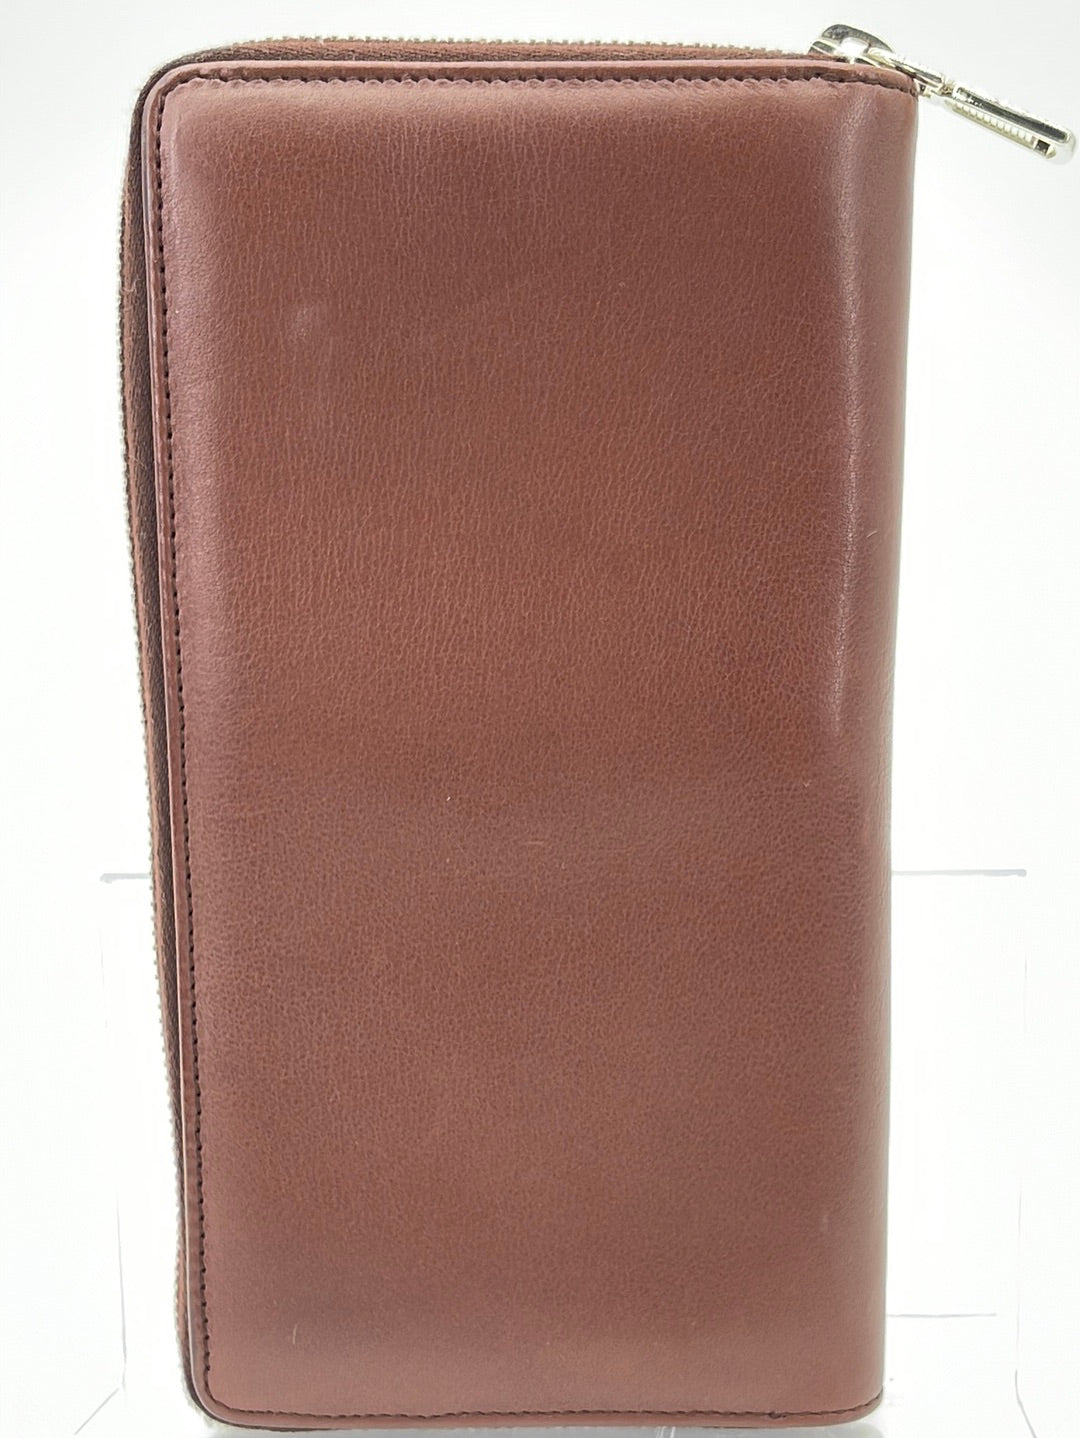 PRELOVED Saint Laurent Brown Embossed Leather Long Zippy Wallet 2339003661 062323